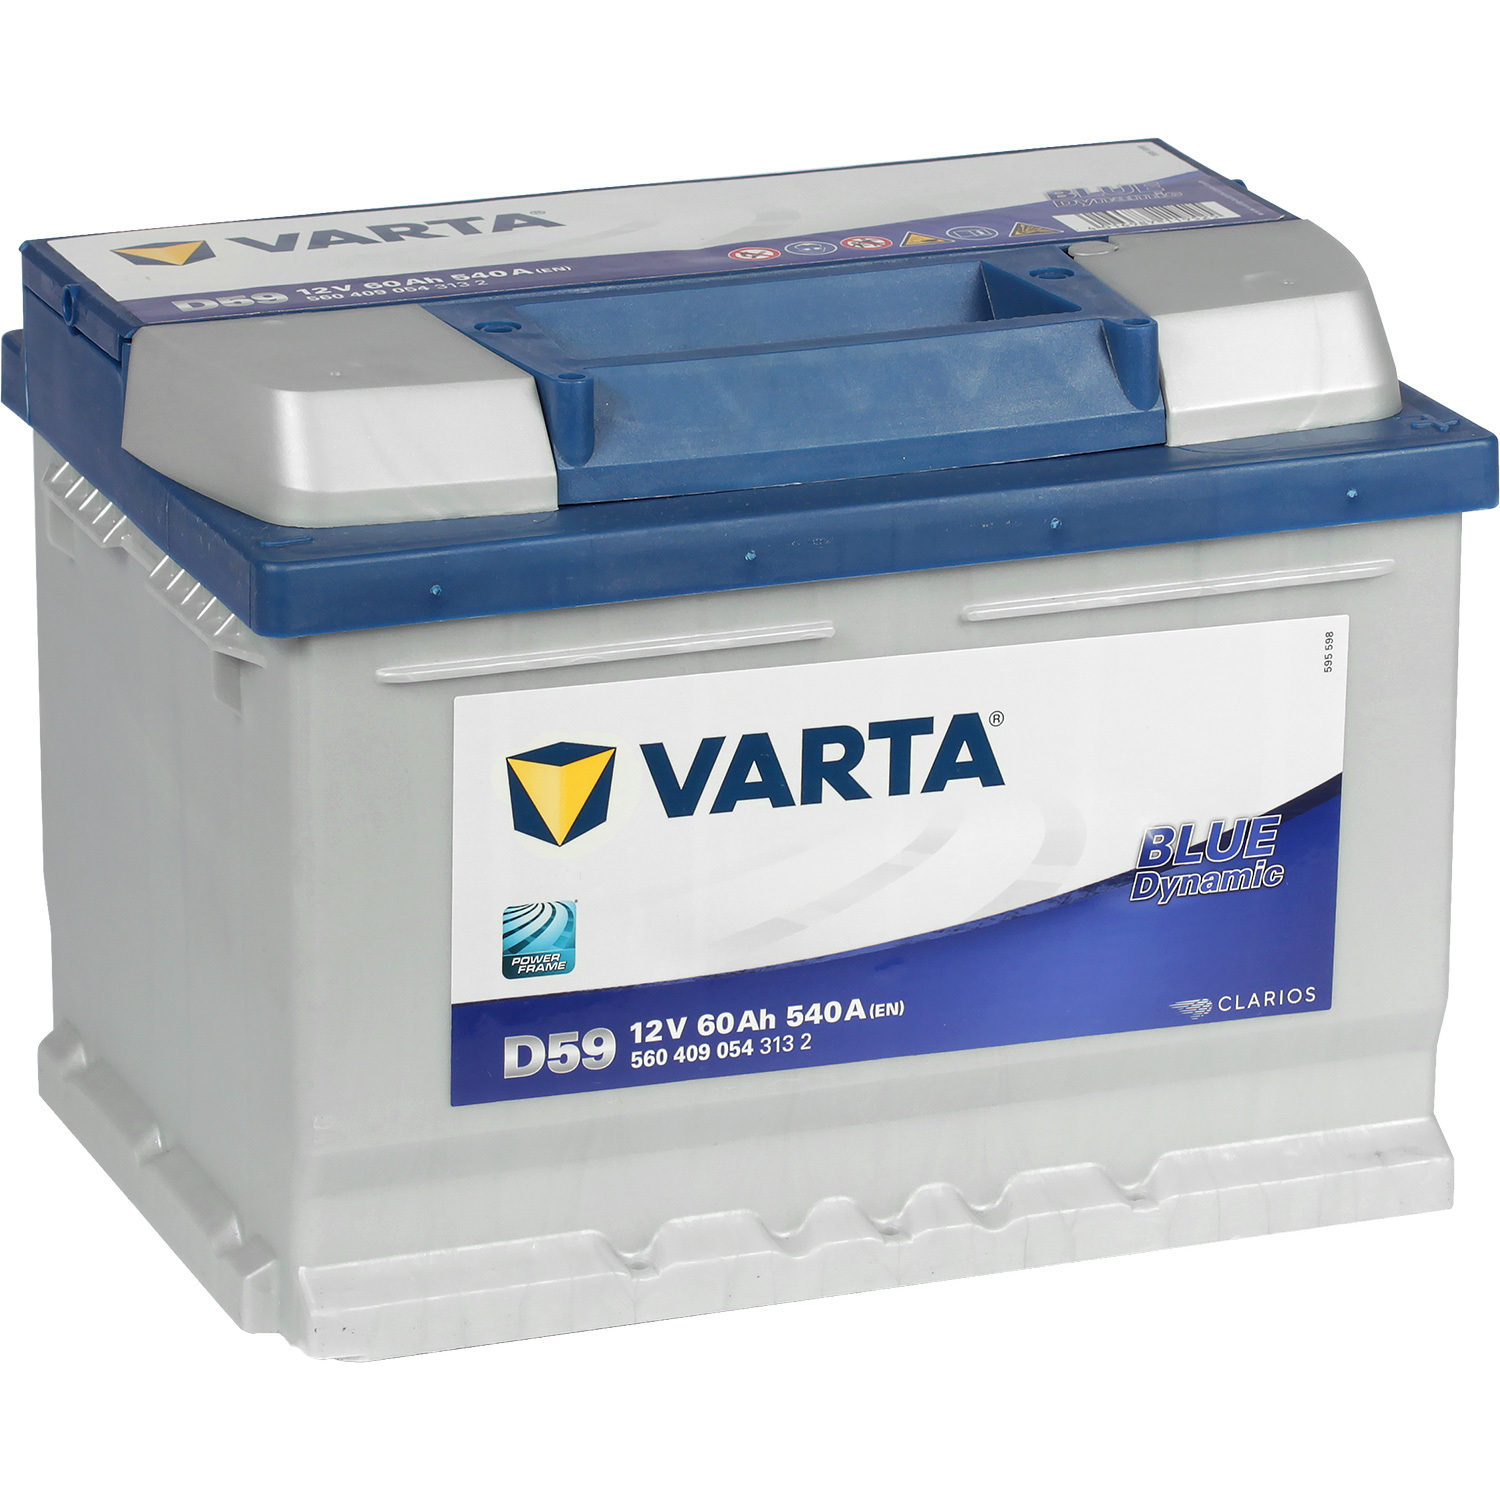 Varta Автомобильный аккумулятор Varta Blue Dynamic D59 60 Ач обратная полярность LB2 varta автомобильный аккумулятор varta blue dynamic d47 60 ач обратная полярность d23l